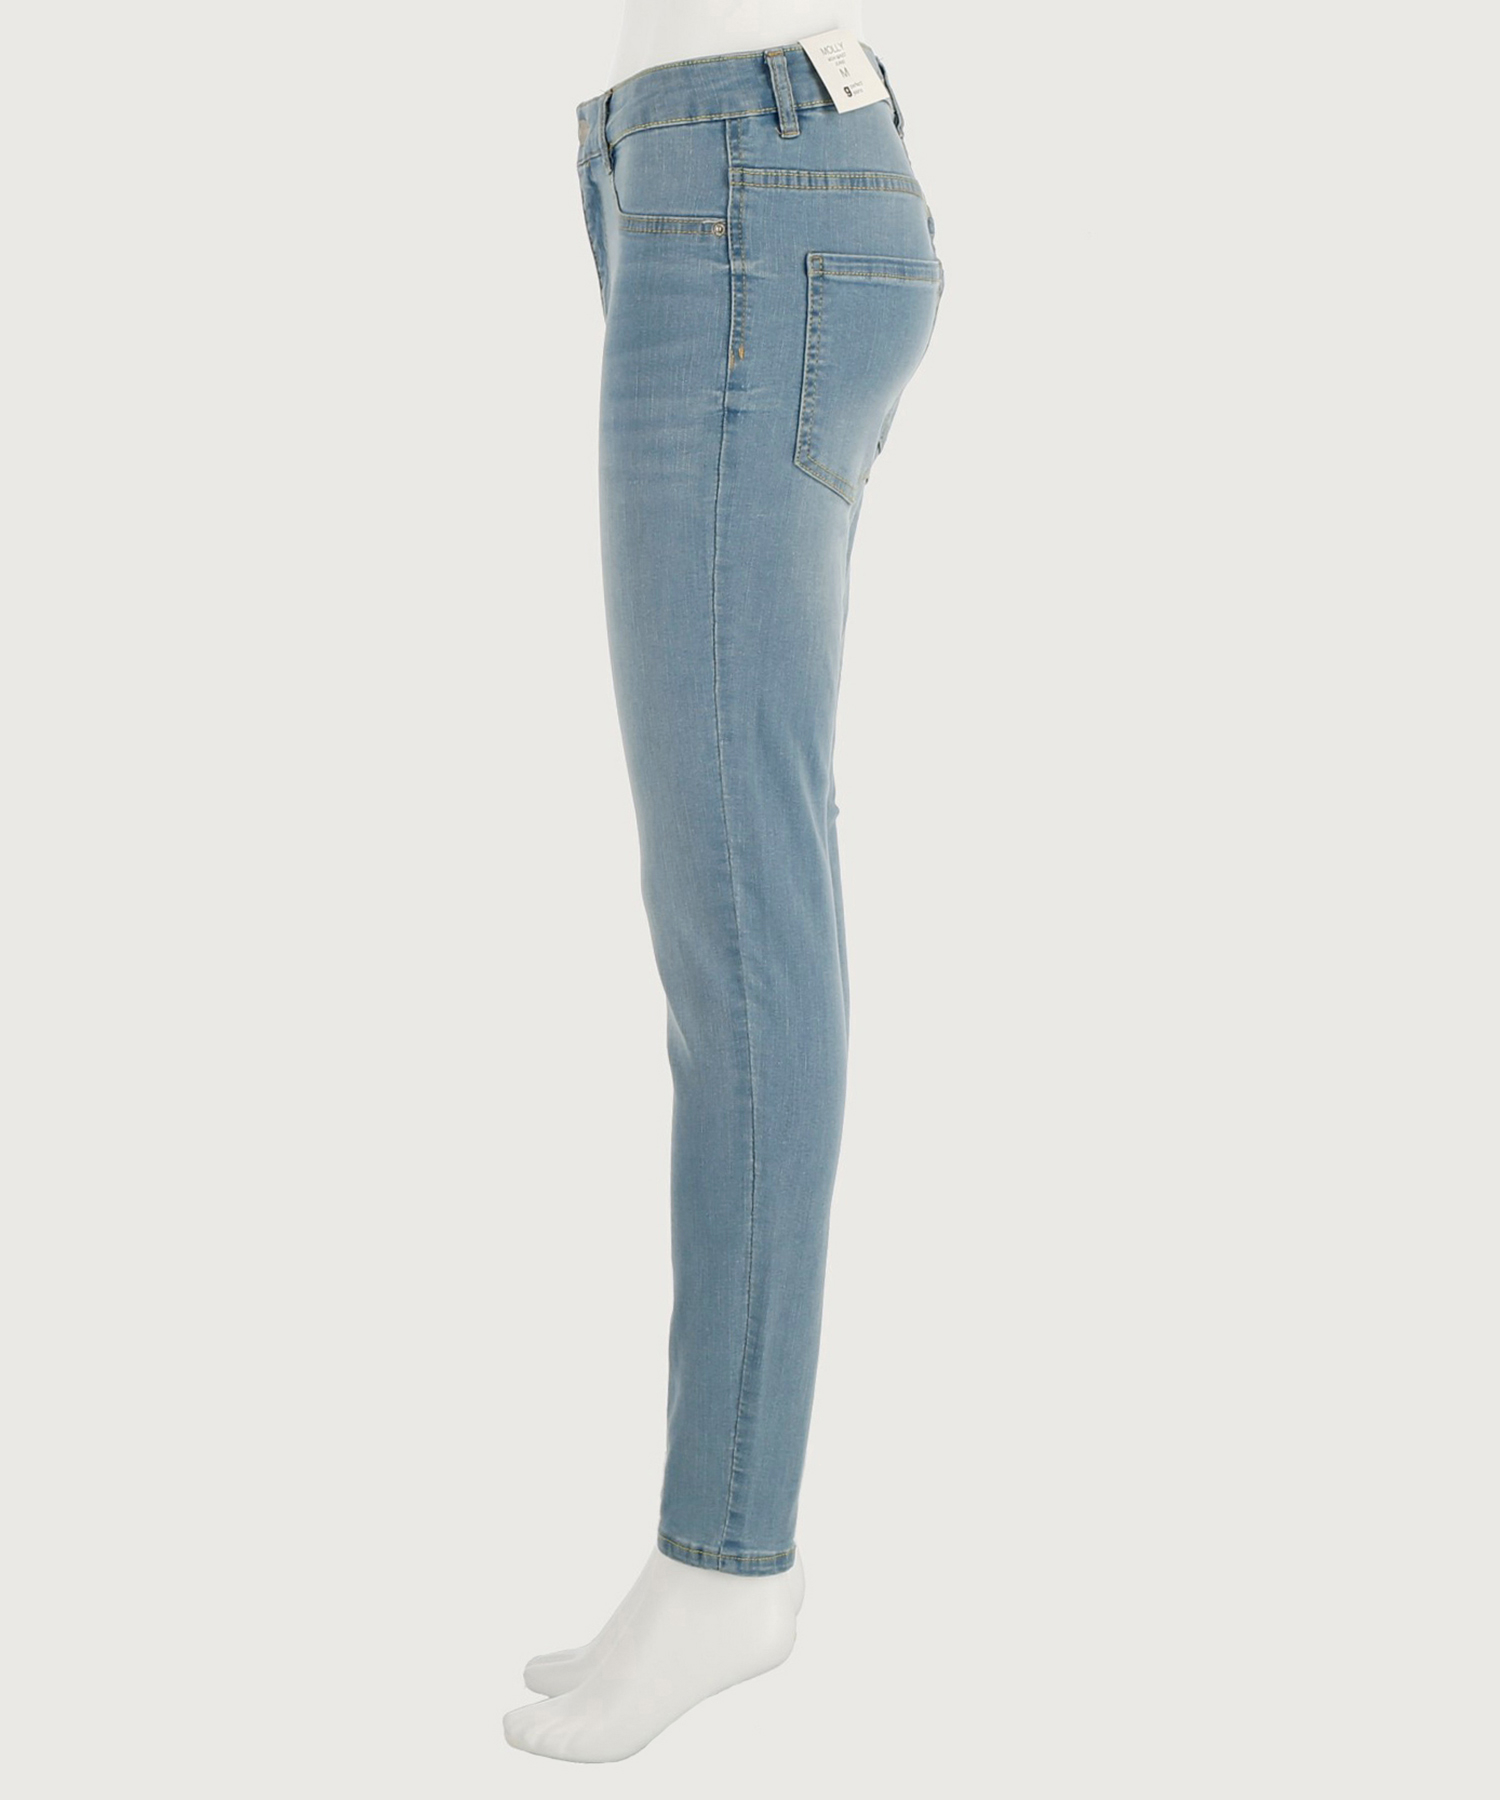 Molly high waist jeans